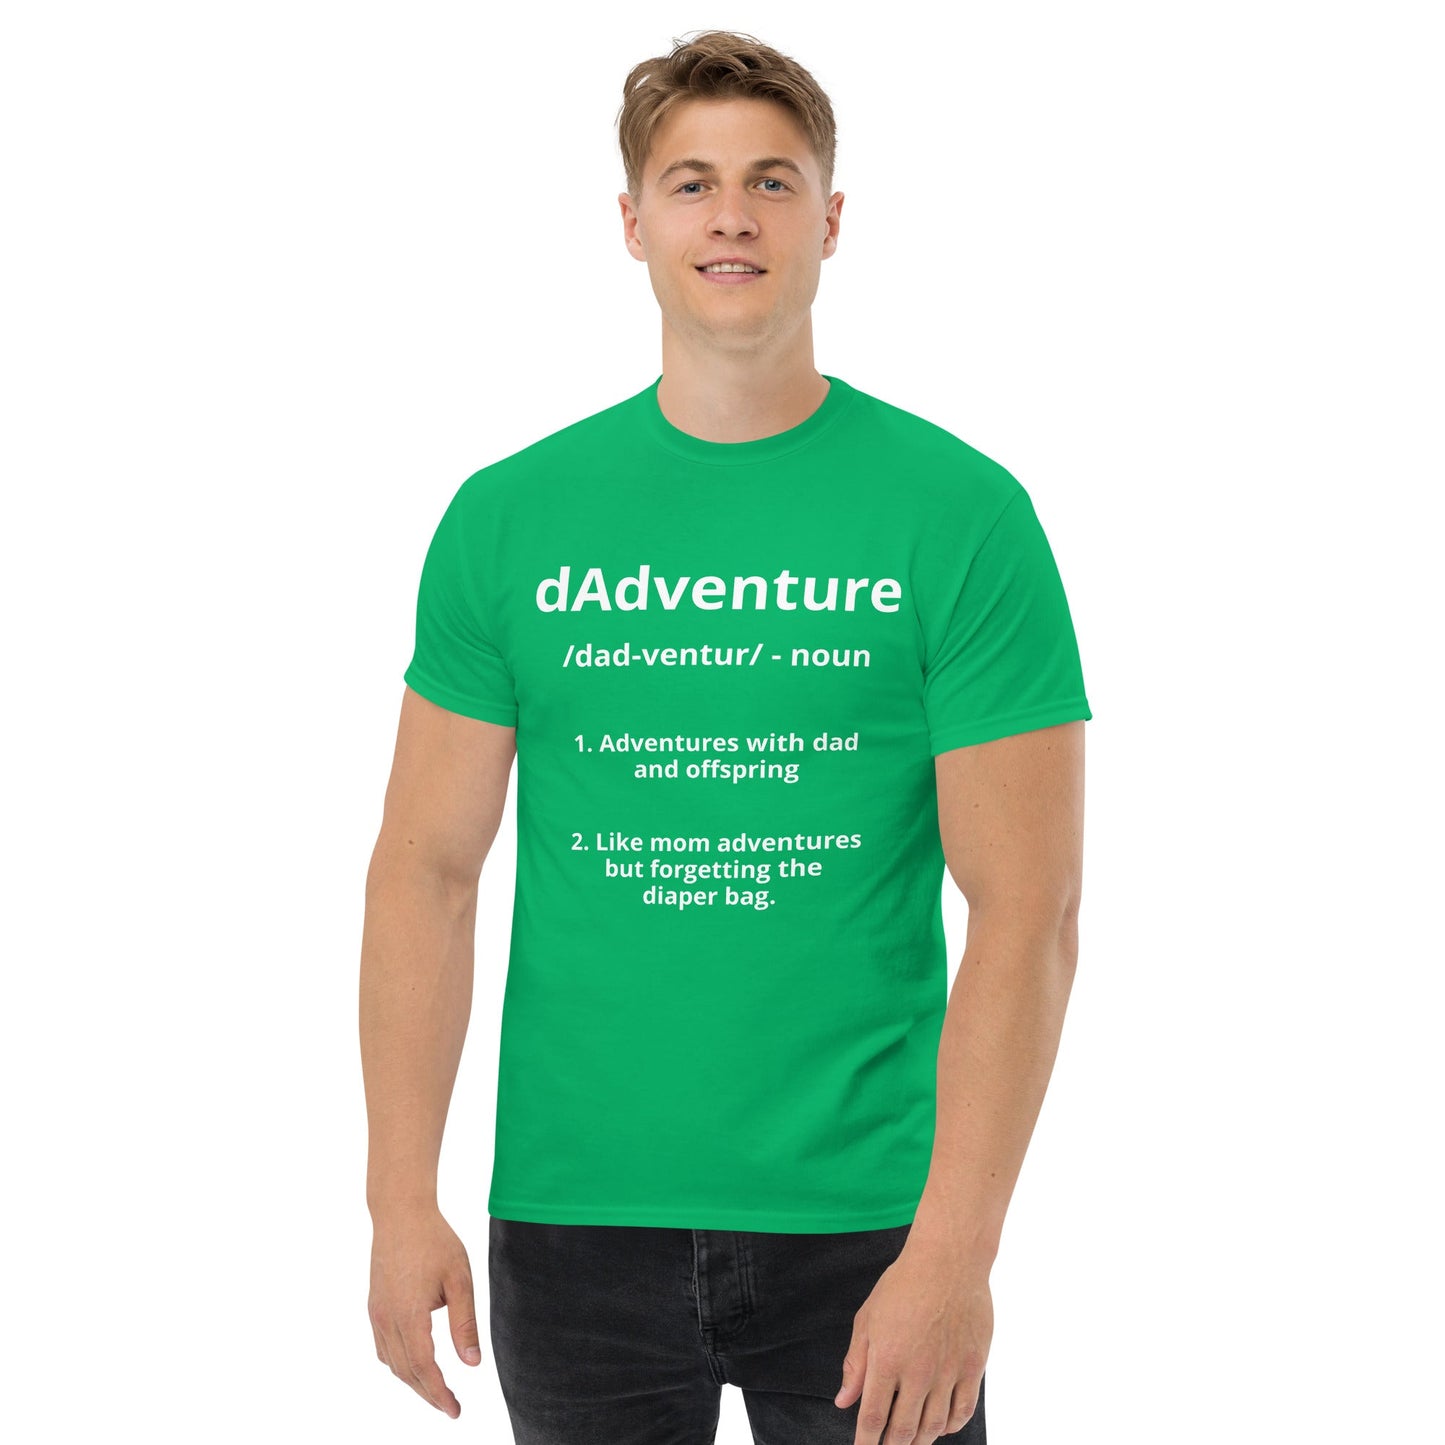 dAdventure Definition T-Shirt - dAdventure